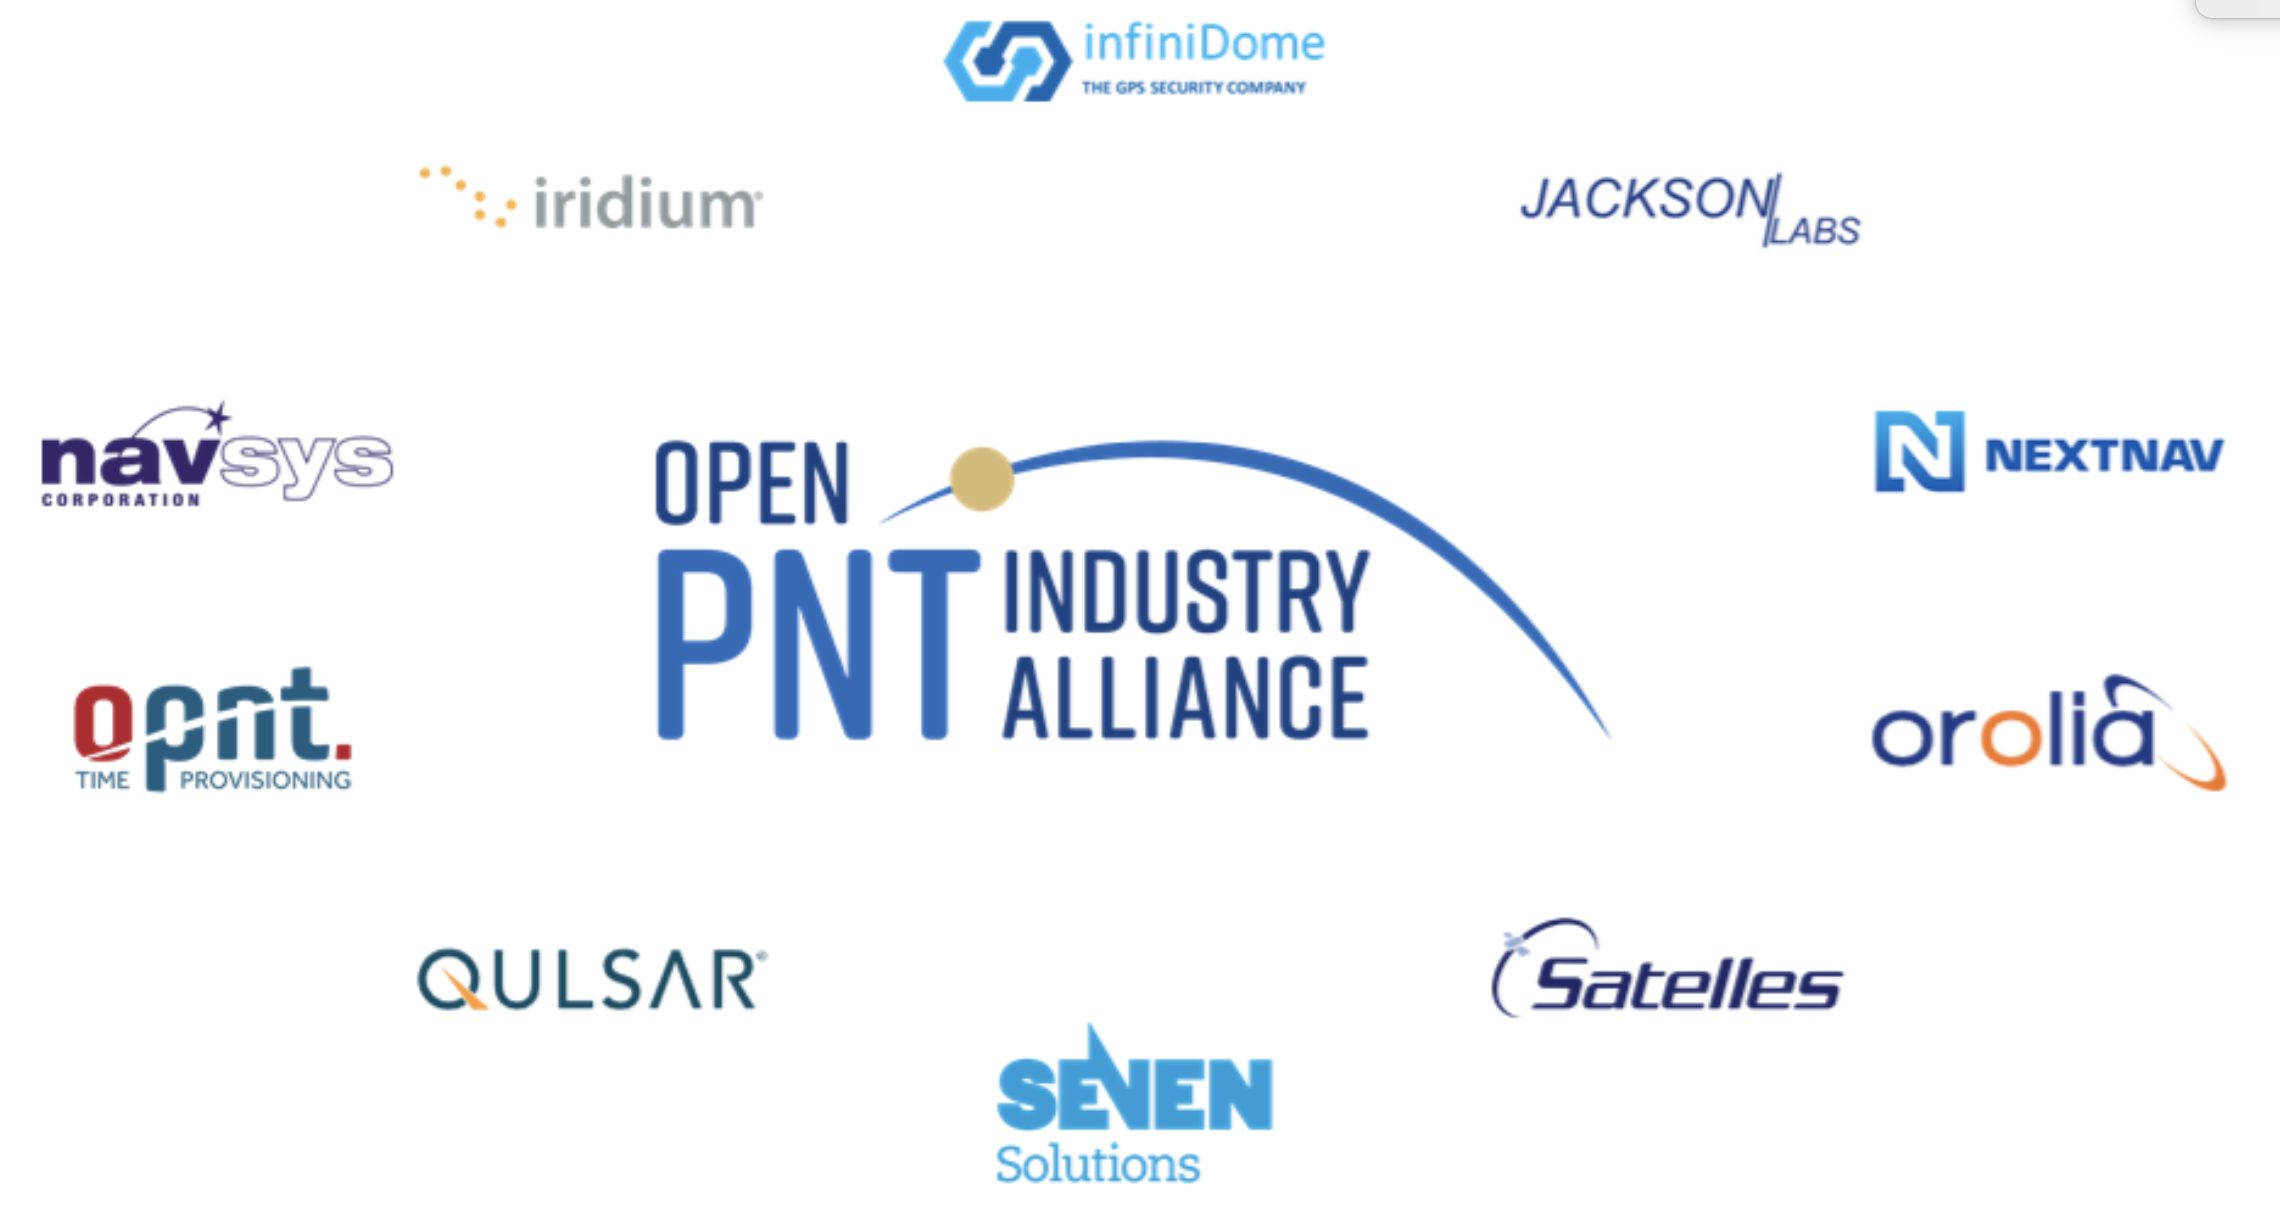 Open PNT Alliance